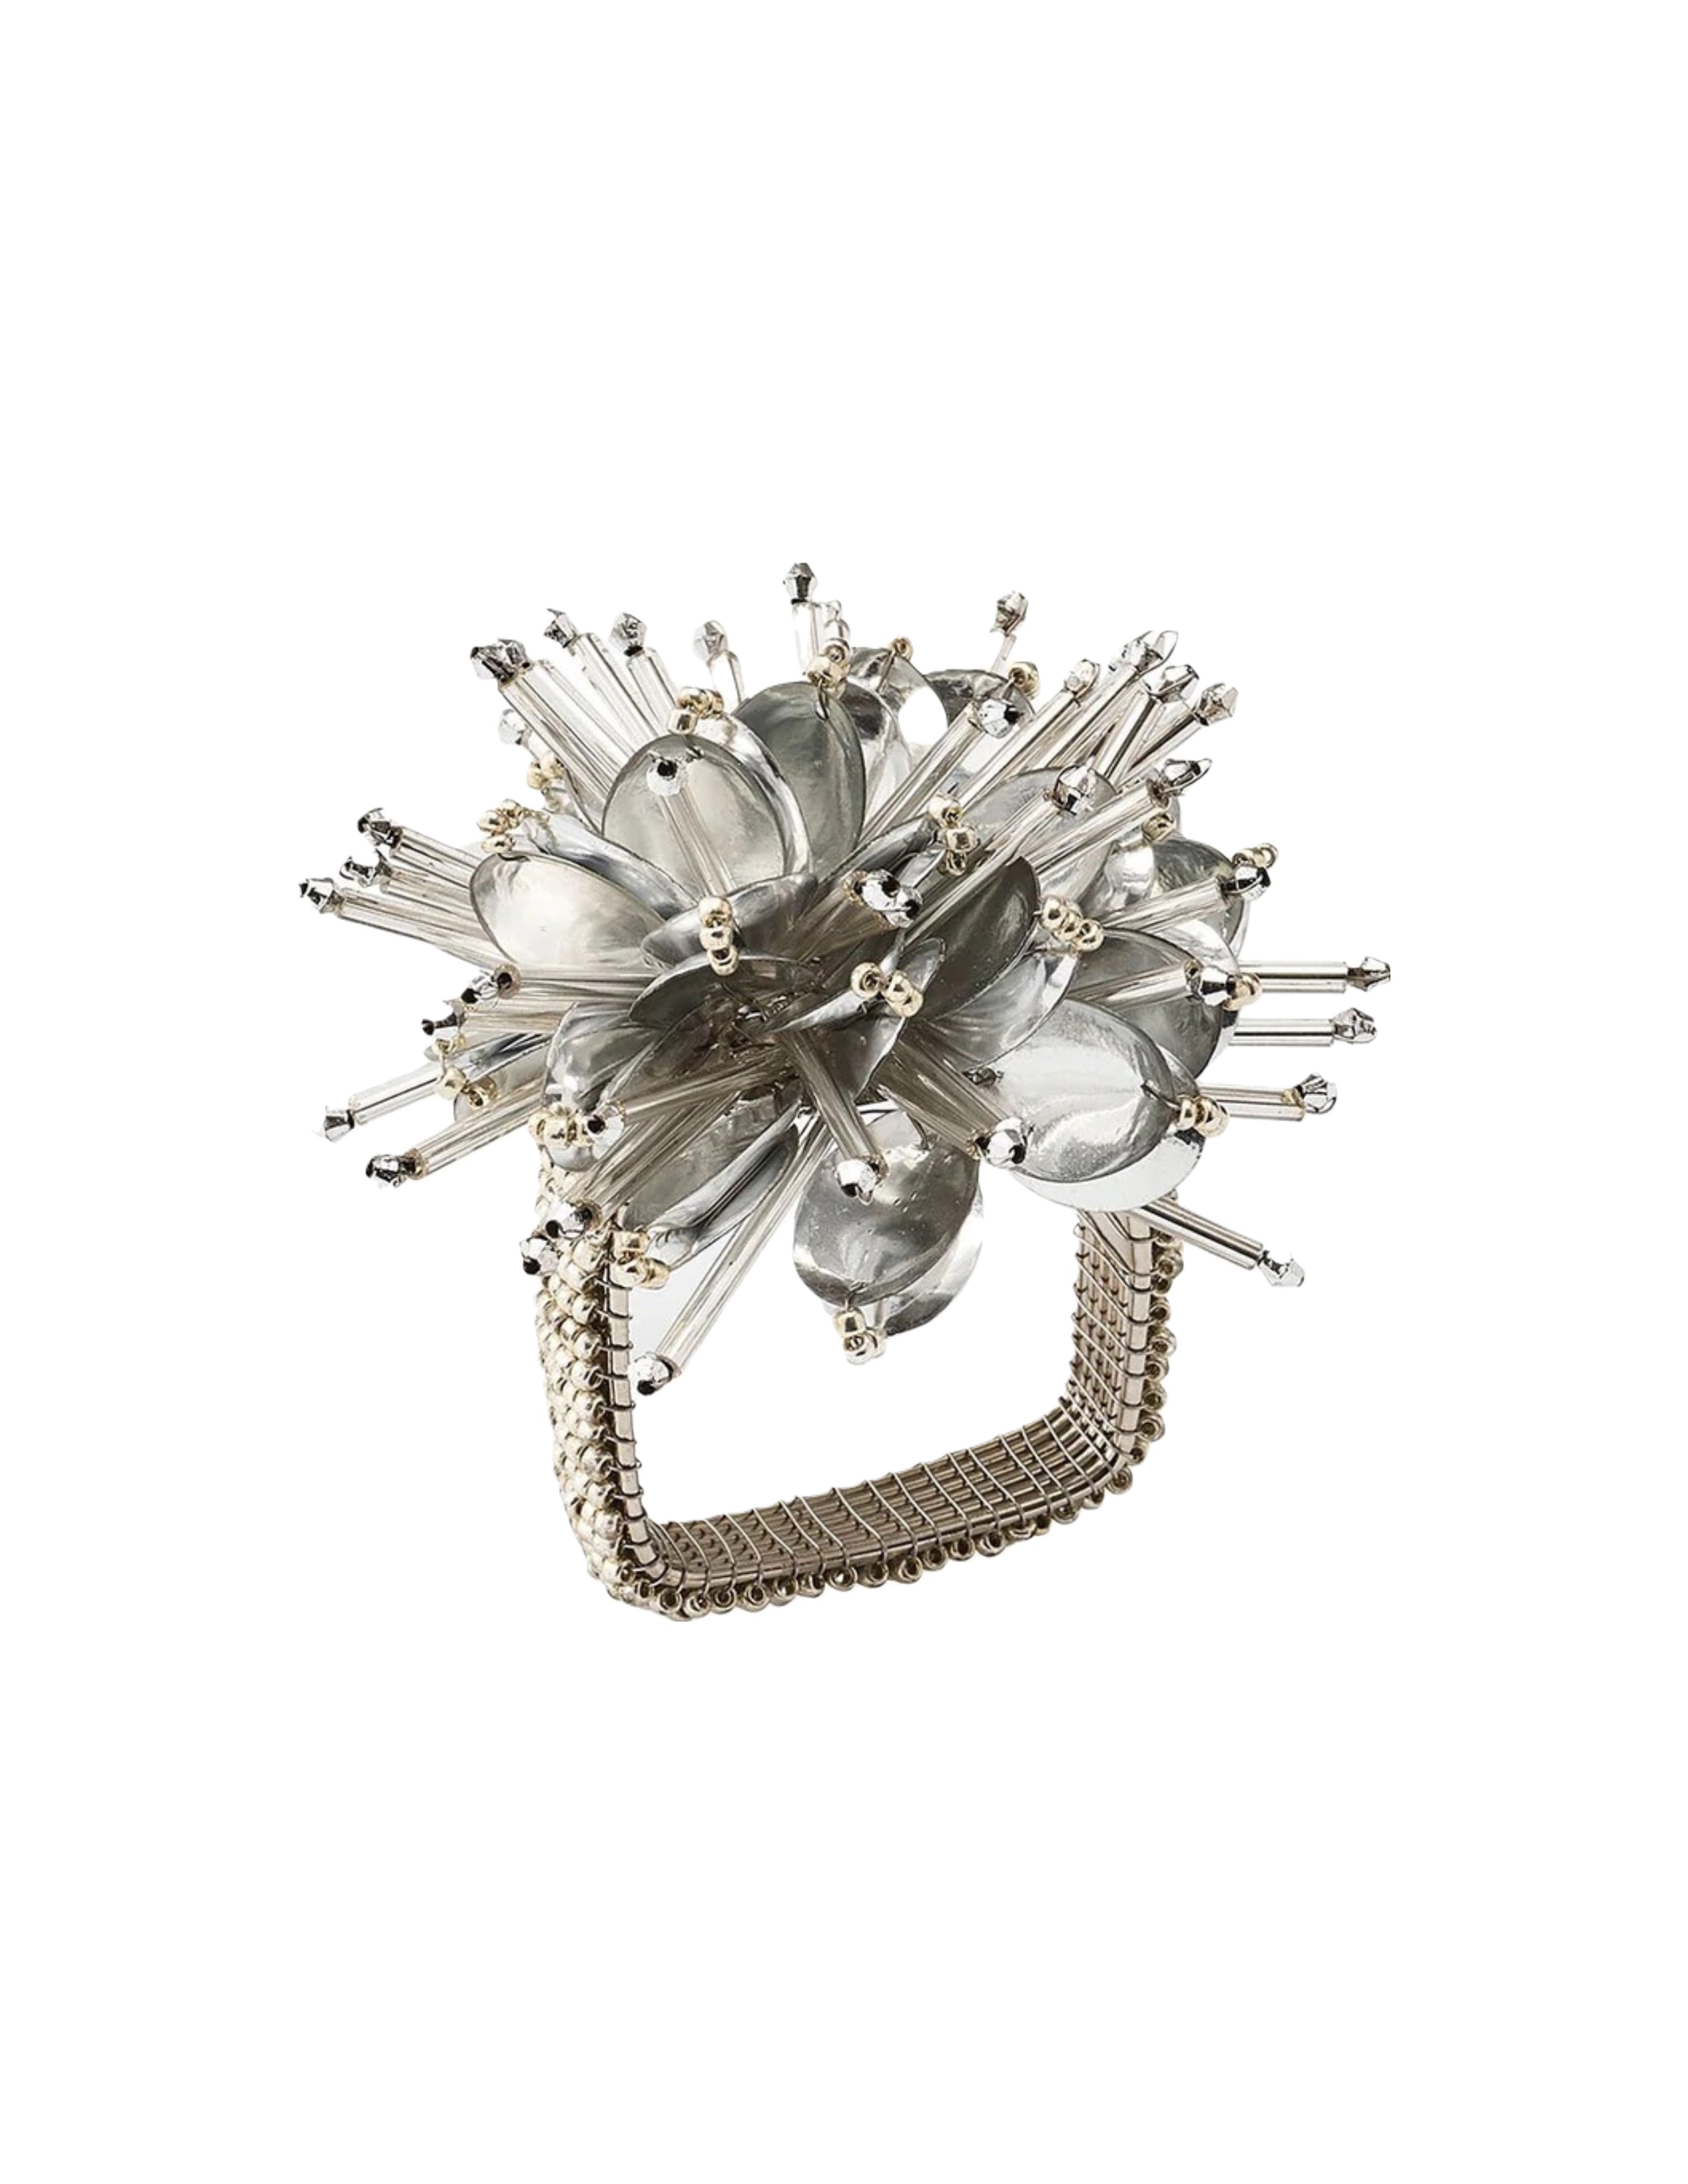 Starburst Napkin Ring Set/4 - Silver